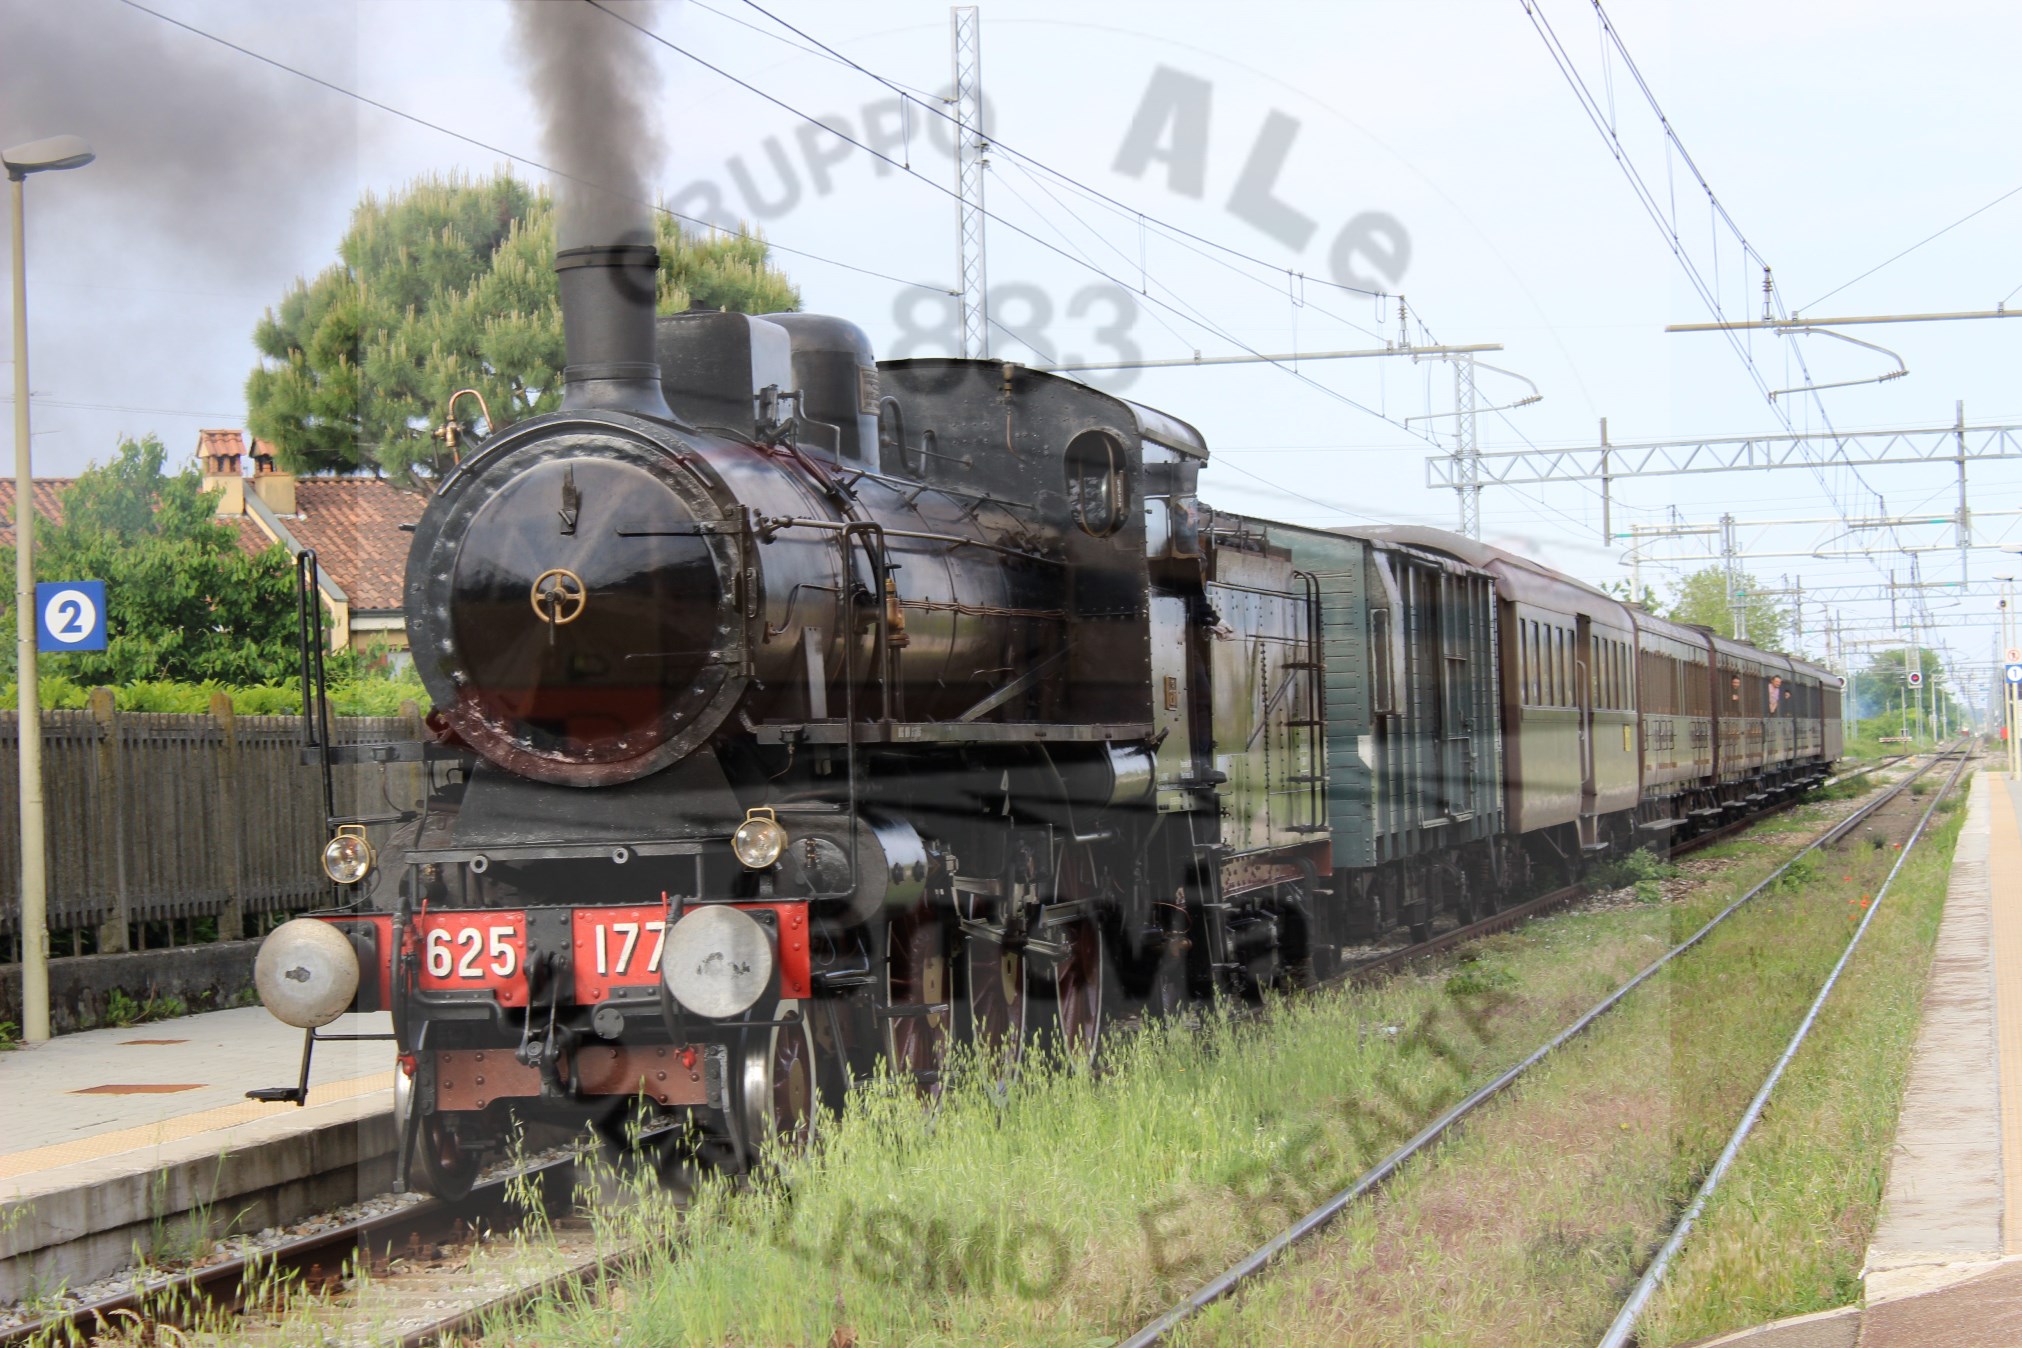 La Gr. 625 177 effettuato un treno storico; qui in sosta a Paderno D'adda